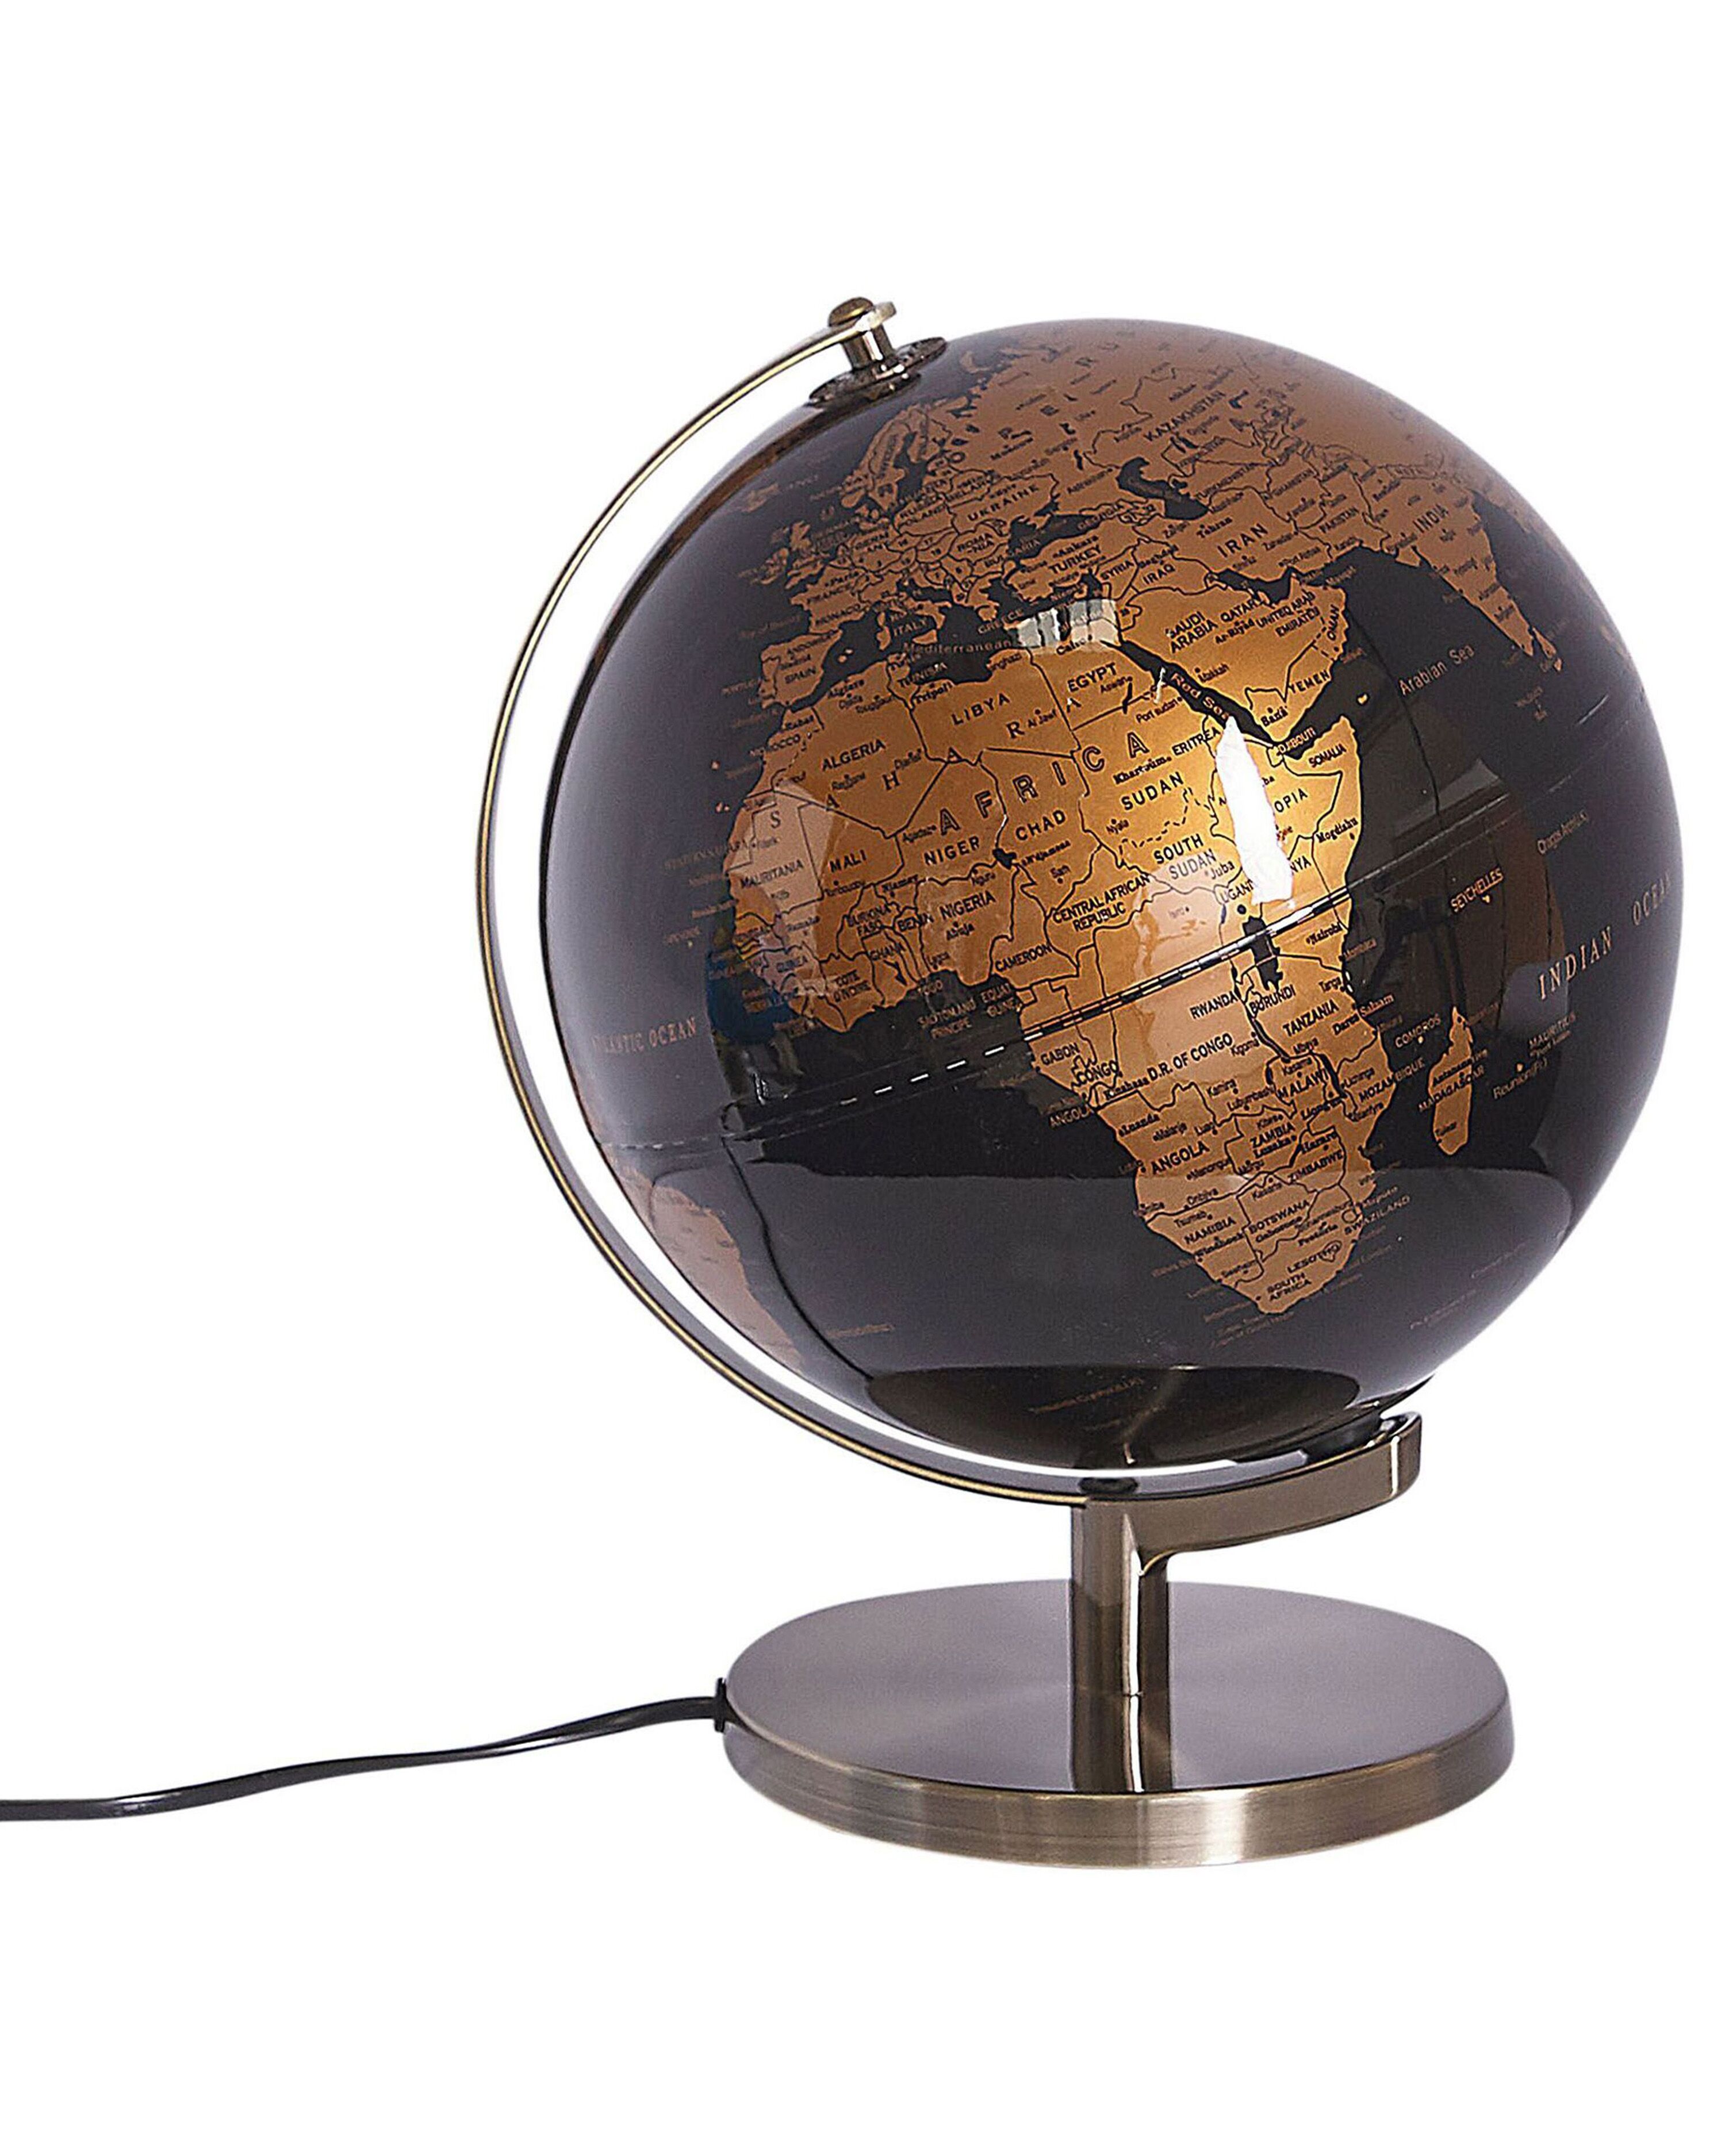 spanning Dwars zitten Gesprekelijk Wereldbol zwart/koper met LED-verlichting 32 cm MAGELLAN | ✓ Gratis Levering